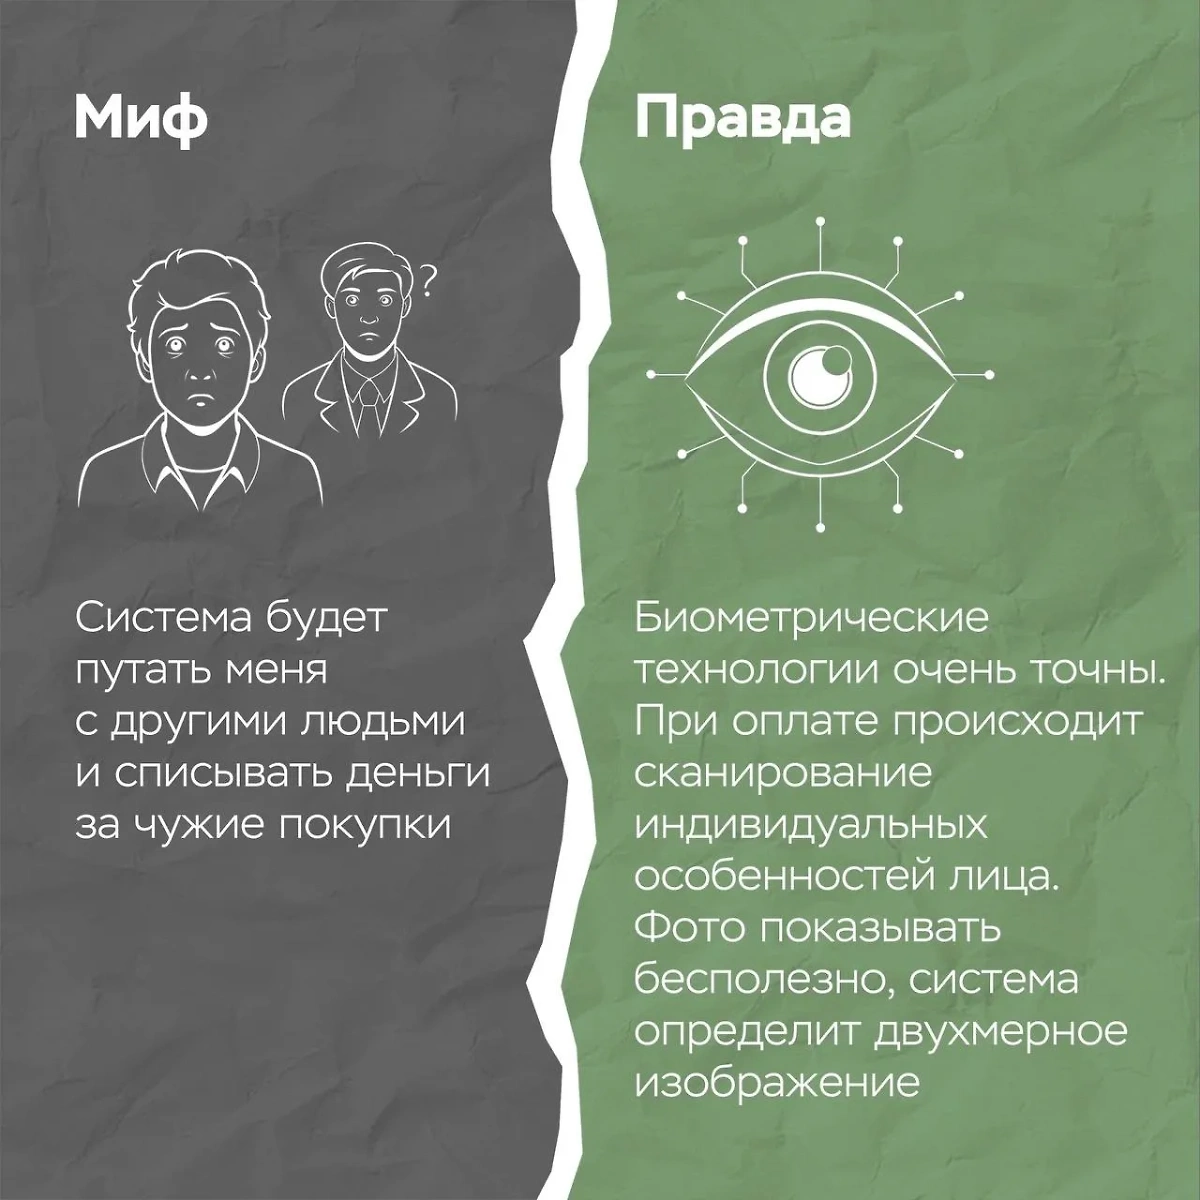 Миф № 2: Биометрические технологии неточны. Фото © По информации ГУ Банка России по ЦФО